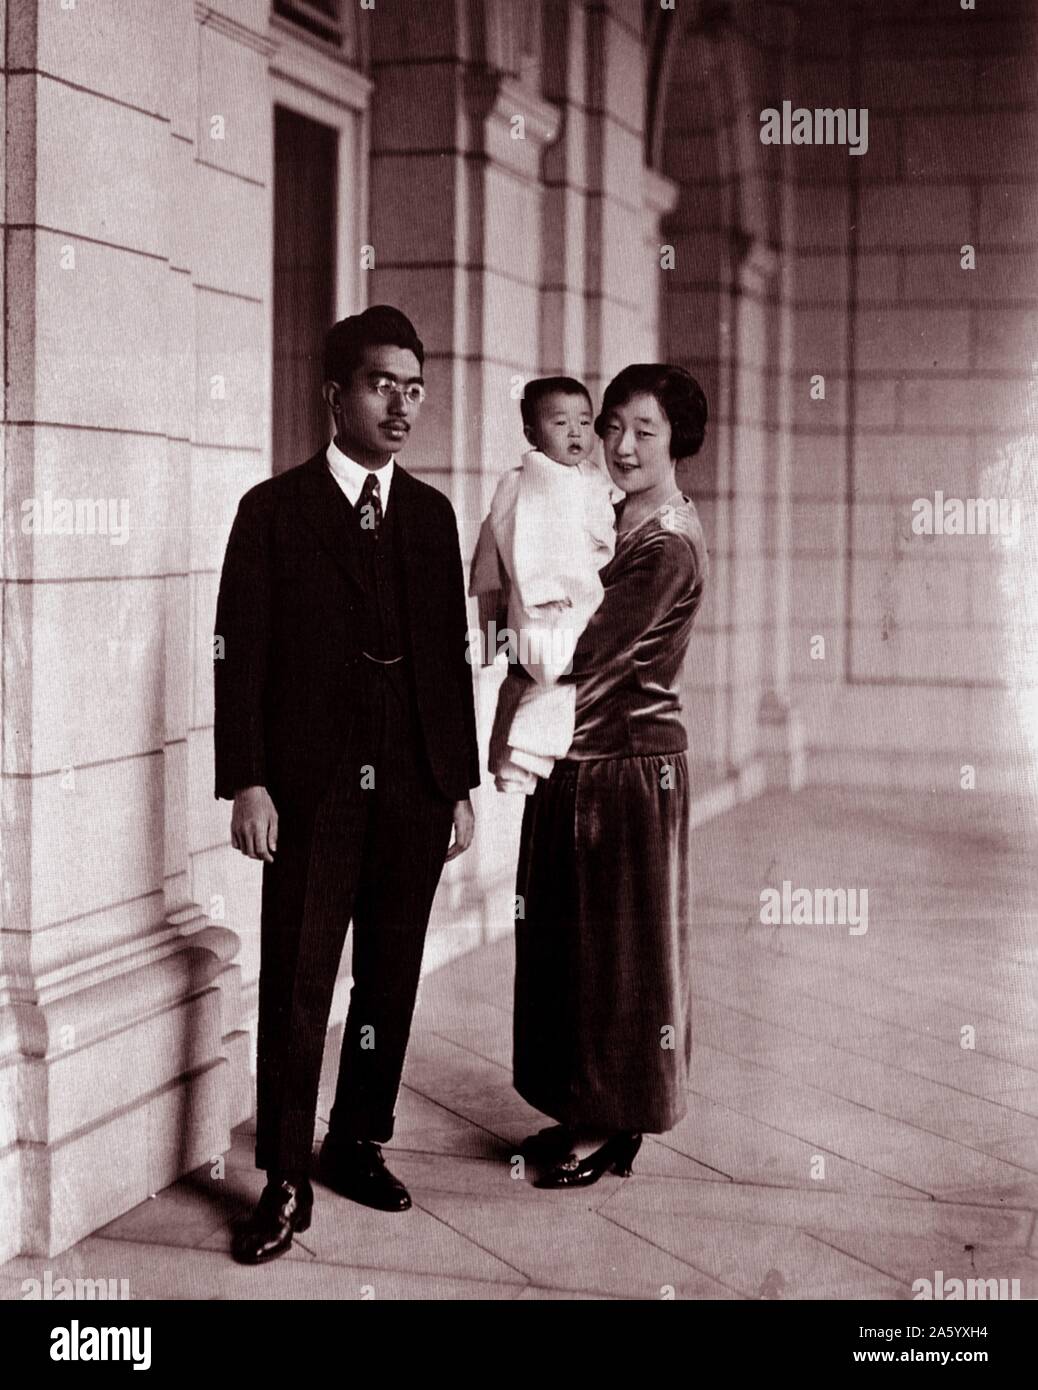 Foto von Kaiser Sh? wa (1901-1989) Kaiser von Japan, auch bekannt als Hirohito, Kaiserin K? jun und ihre Tochter Shigeko Higashikuni (1925-1961). Datiert 1928 Stockfoto